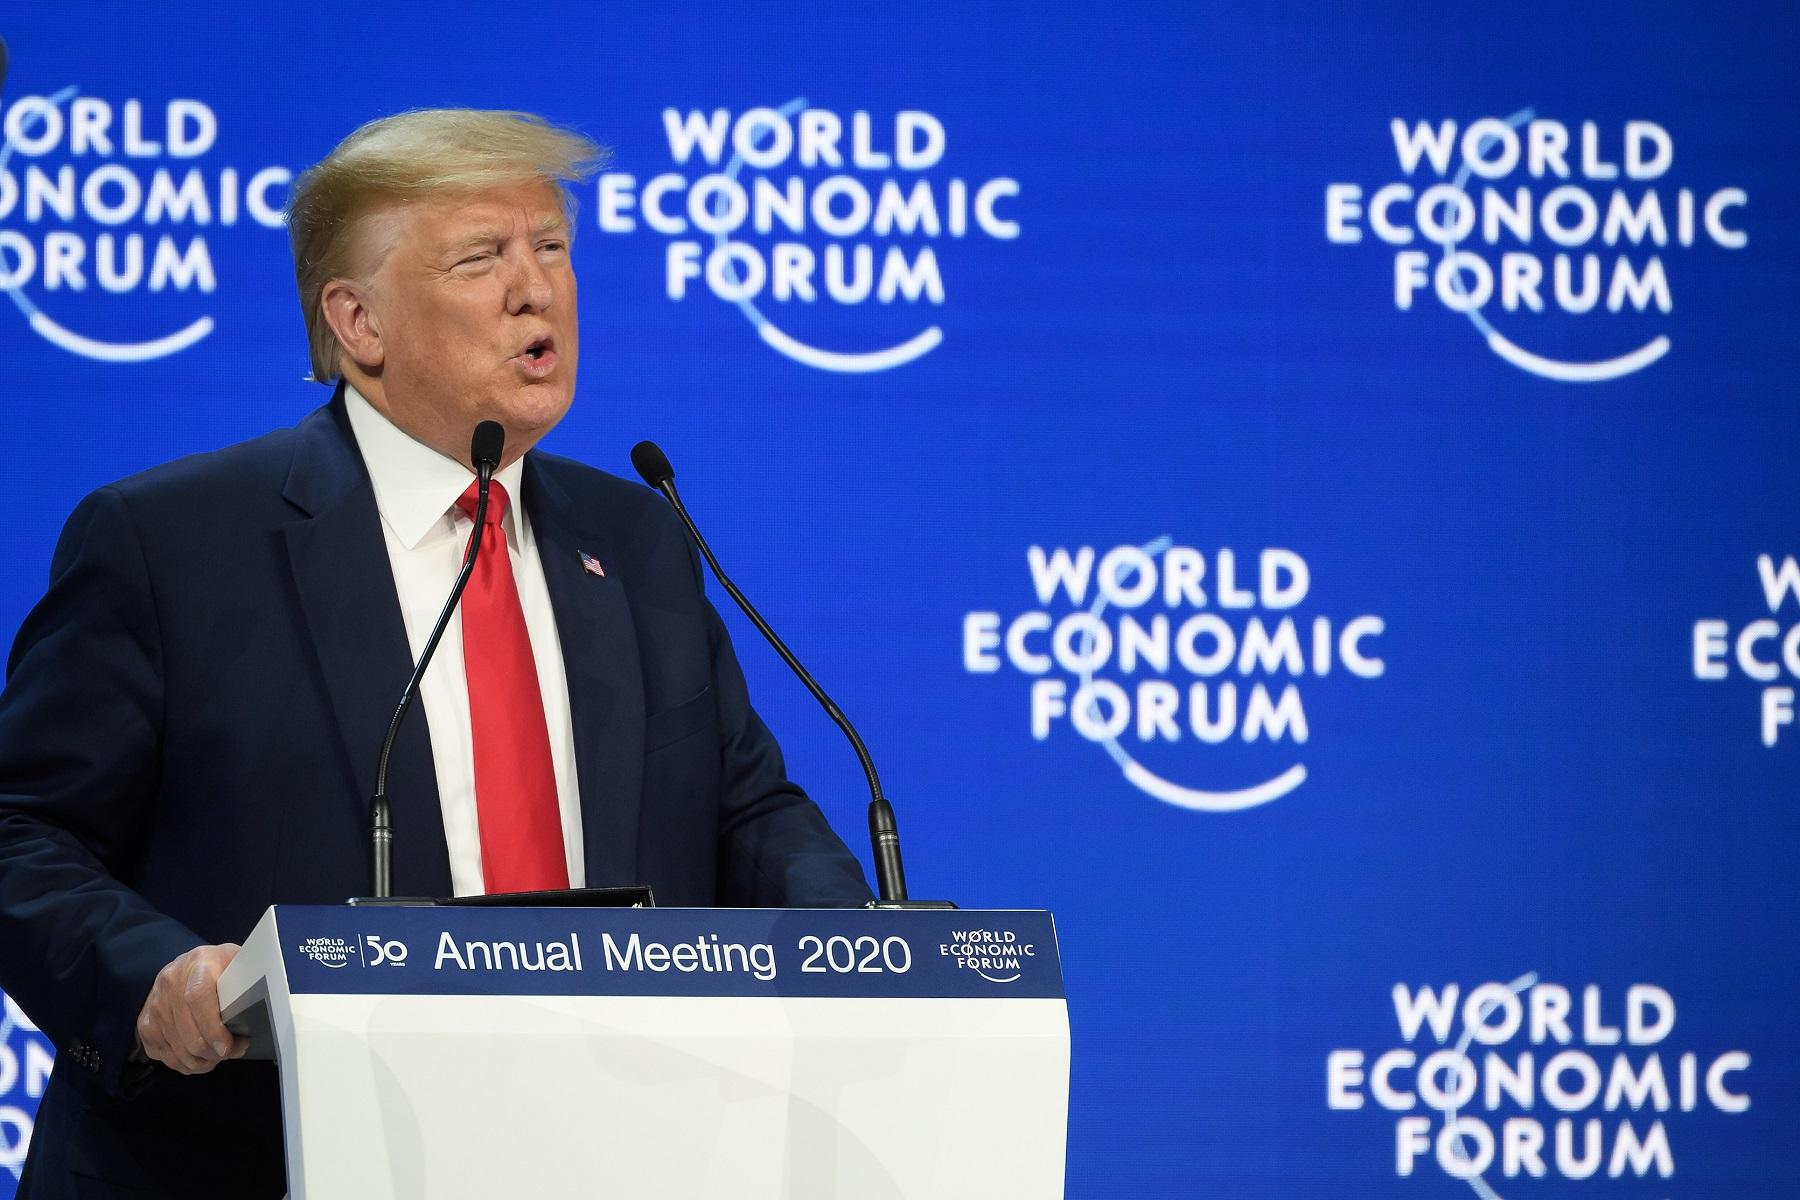 يلقي الرئيس الأمريكي دونالد ترامب خطابا في مركز الكونغرس خلال الاجتماع السنوي للمنتدى الاقتصادي العالمي (WEF) في دافوس. في 21 يناير 2020. (أ ف ب)